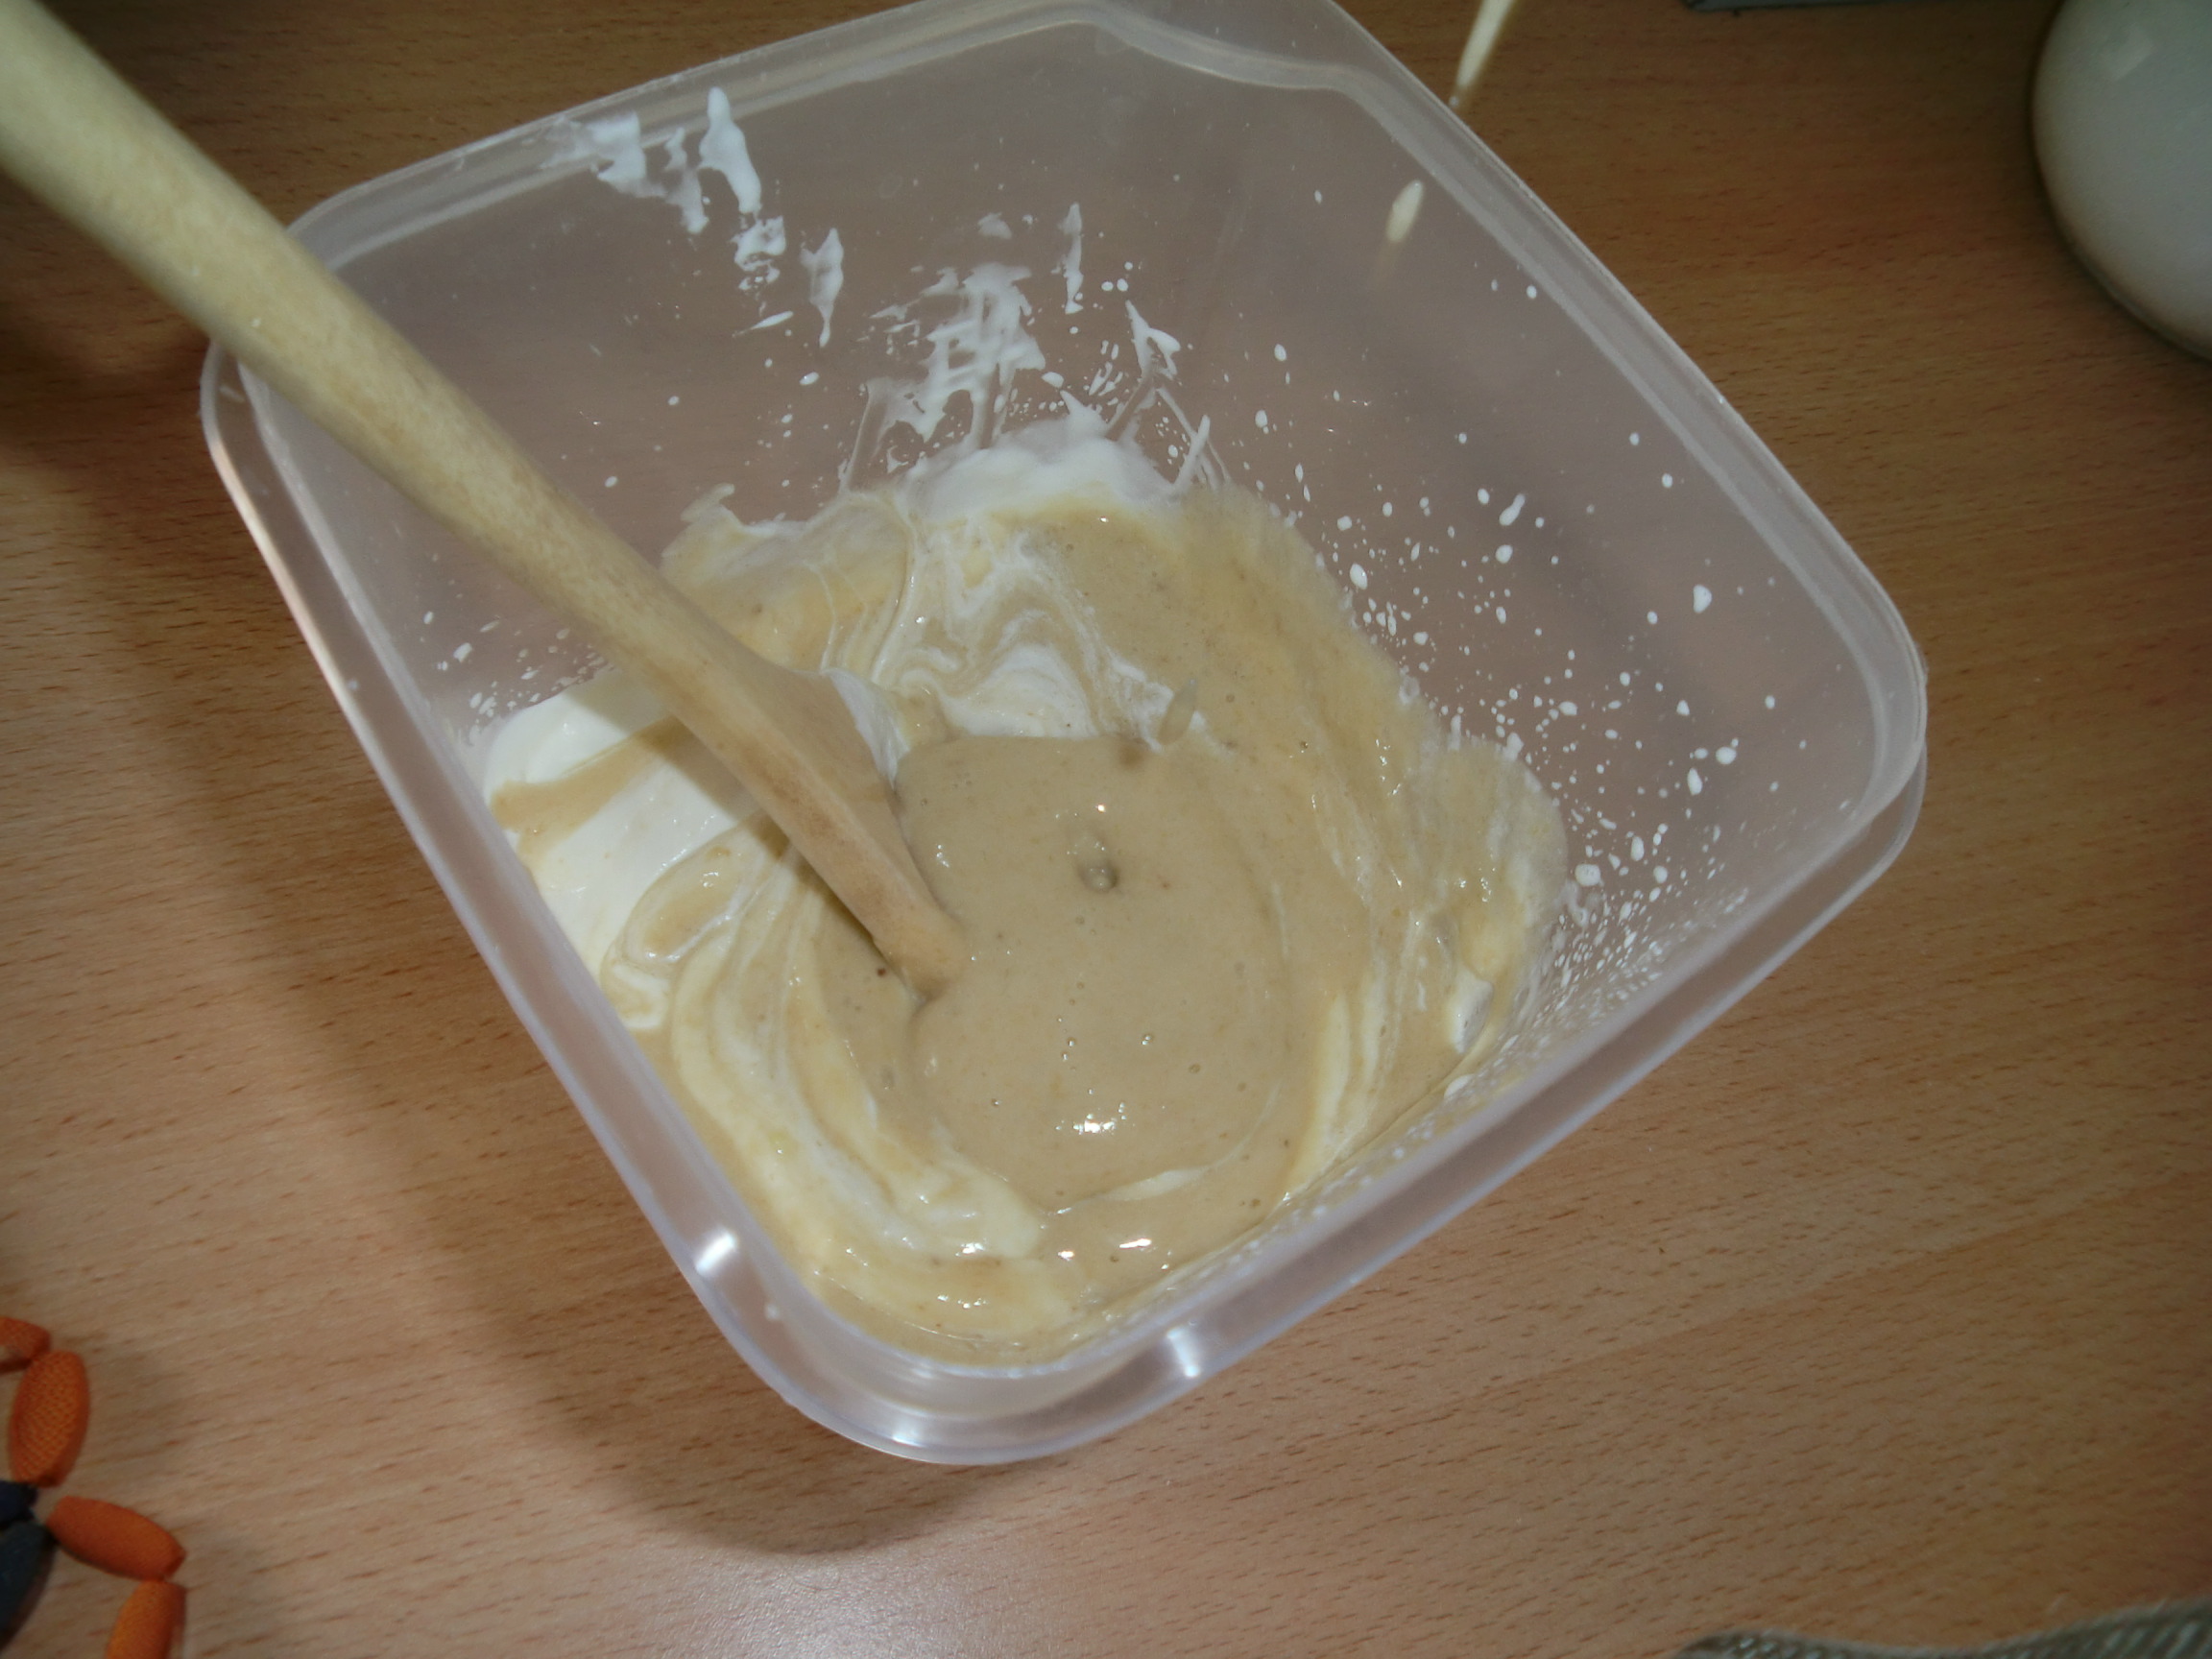 Crema de banane cu lamaie si sos de ciocolata (Crema de platano con limon y toke de chocolate)